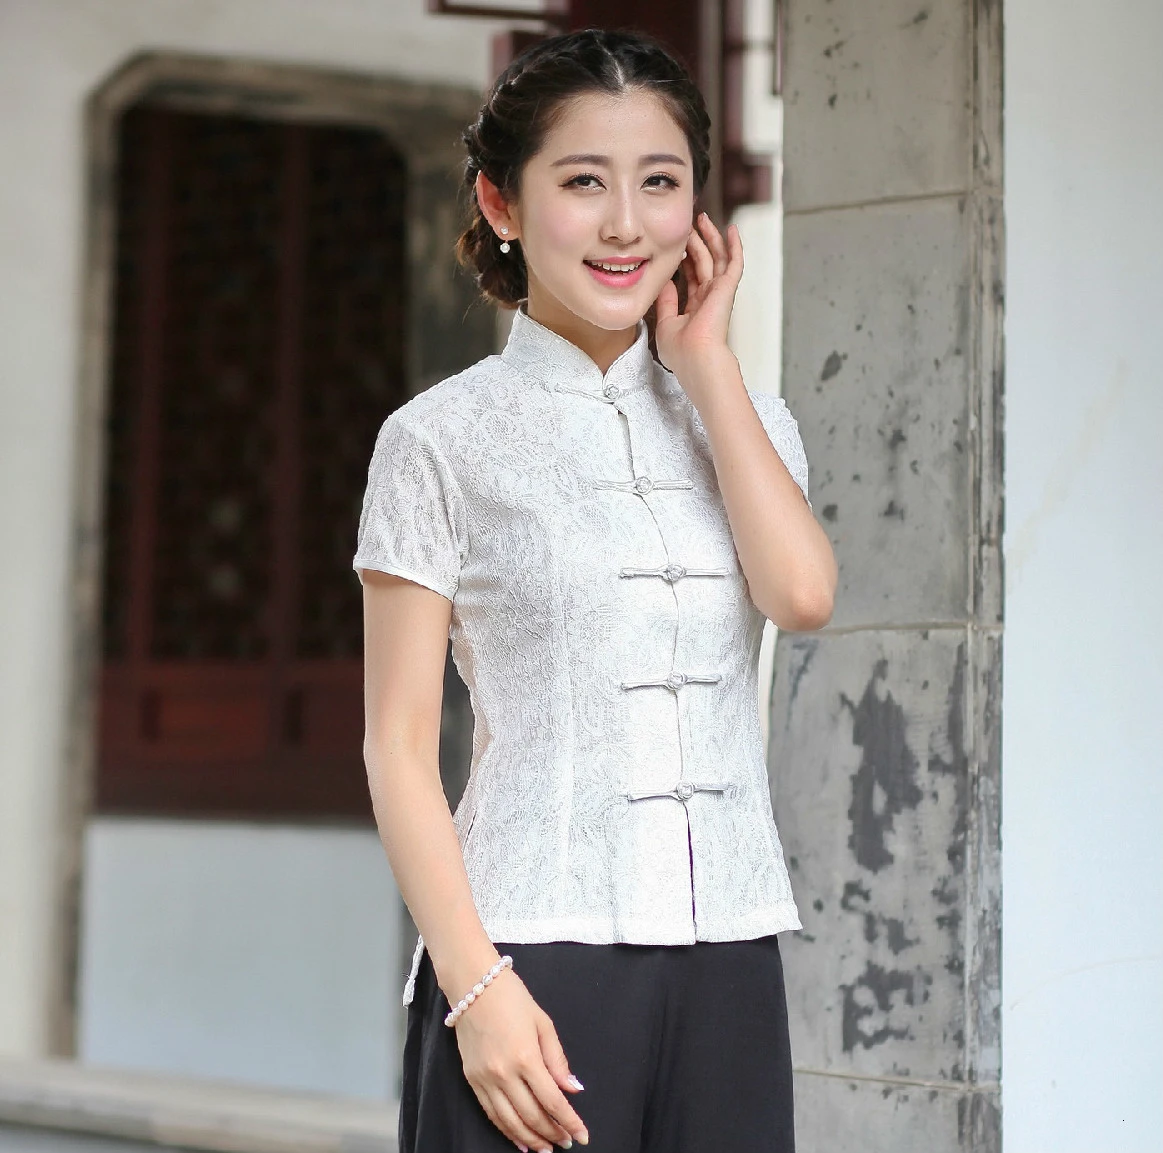 Frauen Damen Chinesische Traditionelle Top Kleidung Qipao Hemd Für Frau  Chinesische Bluse Cheongsam Stil Hemd Schwarz Weiß Spitze Shirts|Oberteile|  - AliExpress